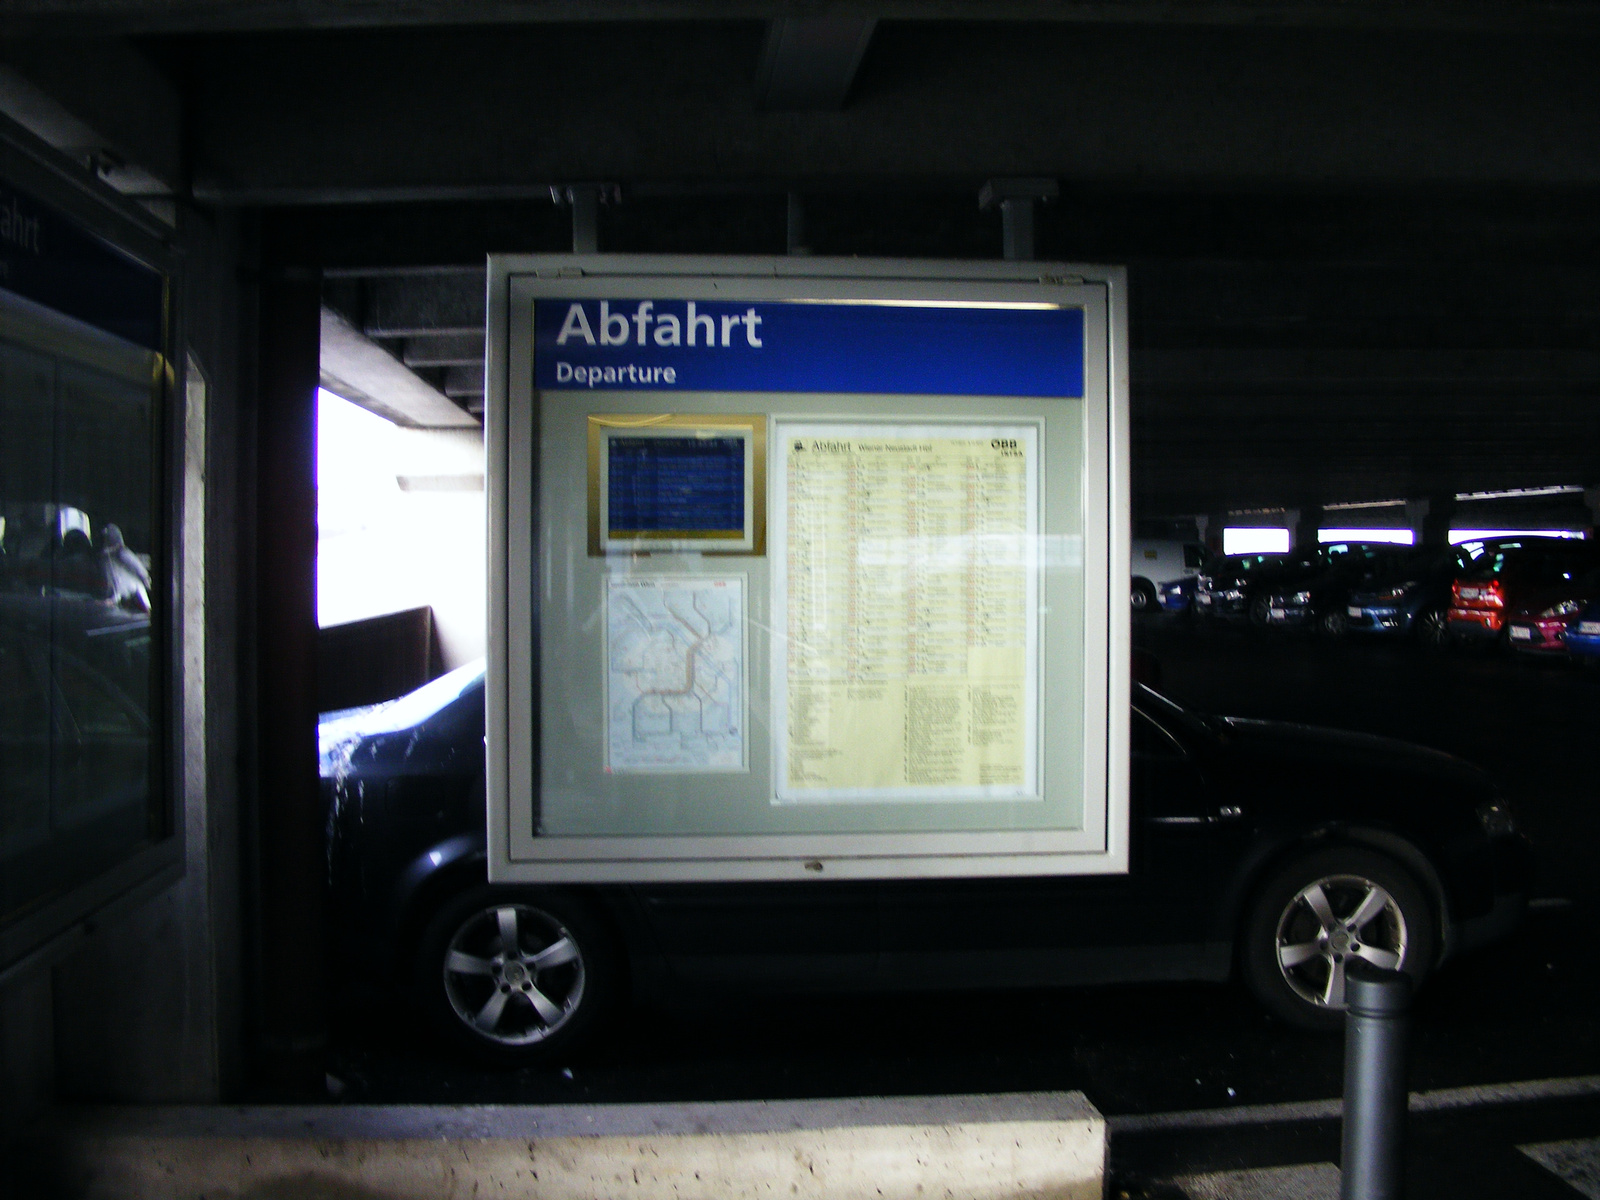 A parkolóházban lévő menetrendi,és információs anyag.